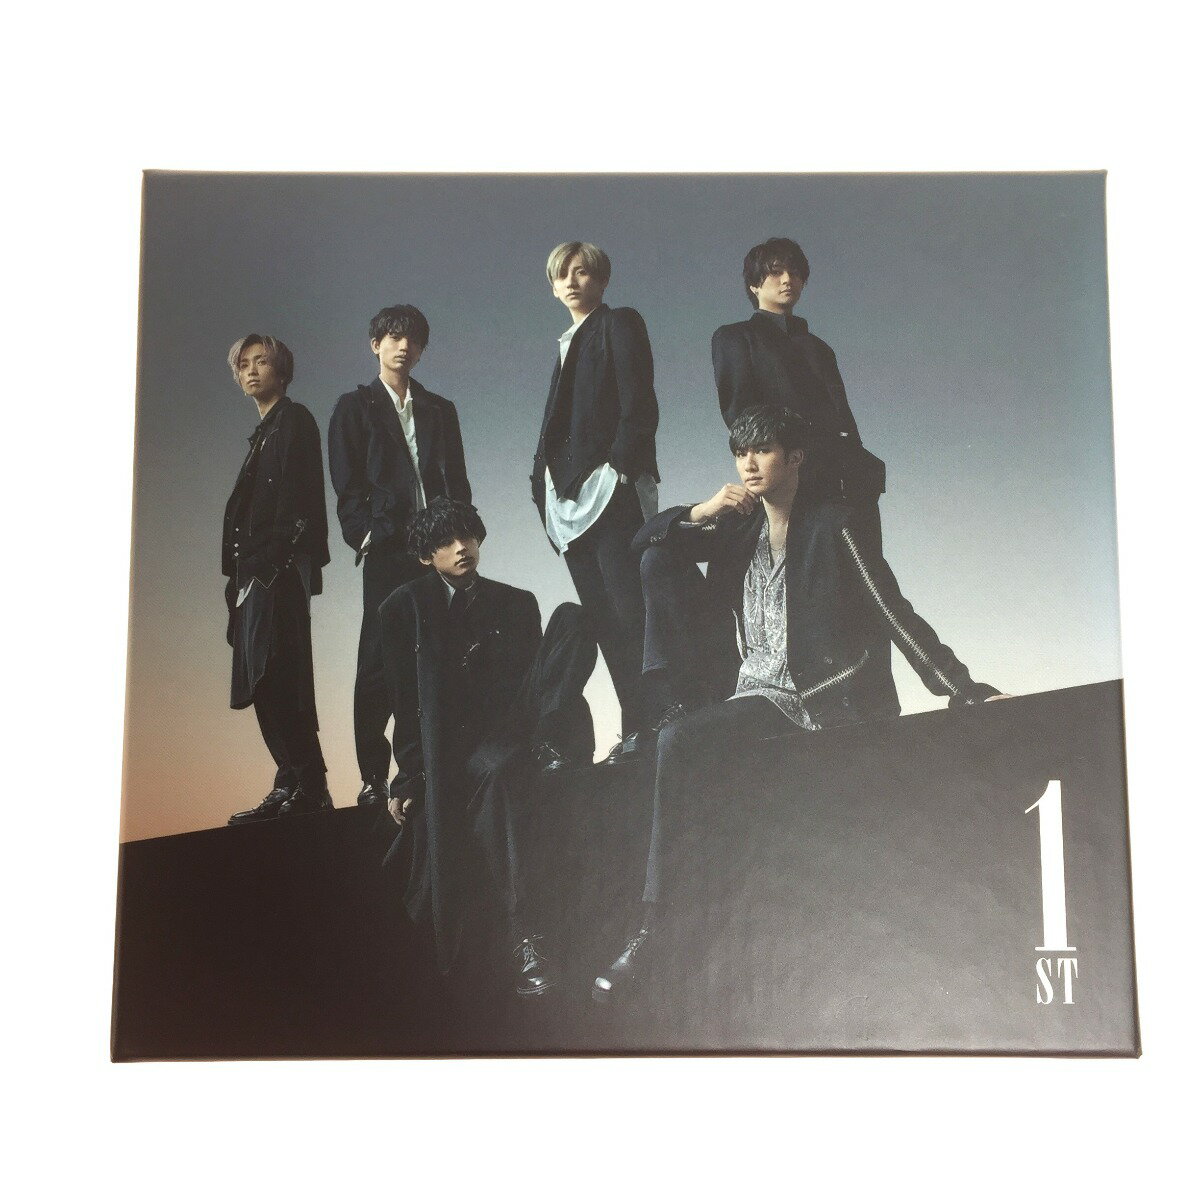 ◎◎【中古】 SixTONES 1ST 初回盤A:原石盤(CD+DVD)アルバム 中古品 Bランク